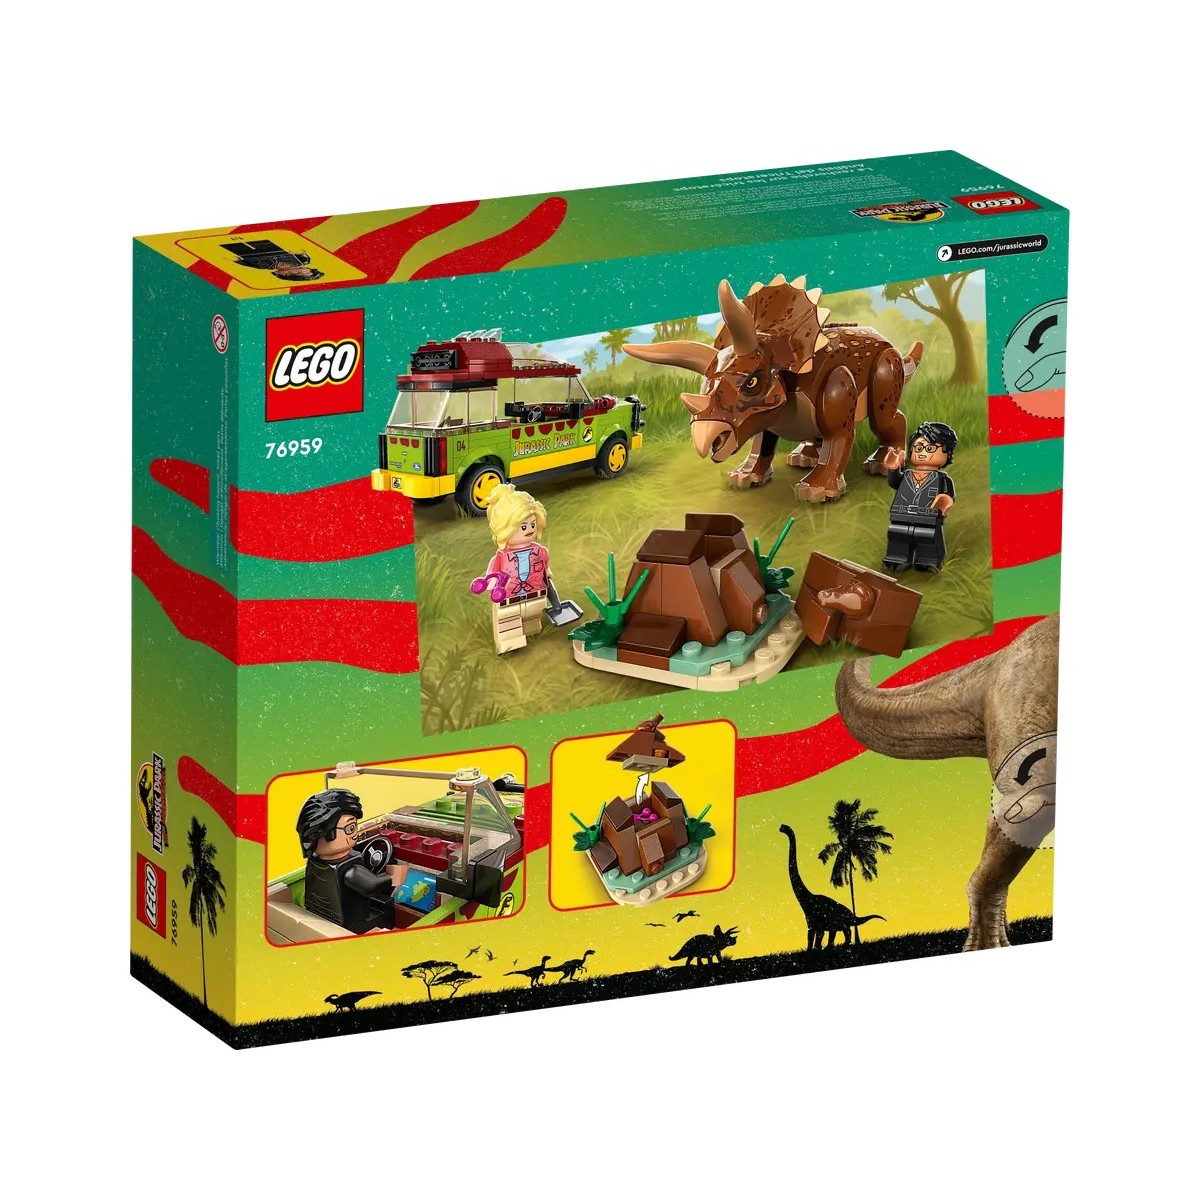 LEGO JURASSIC WORLD VYSKUM TRICERATOPSA /76959/